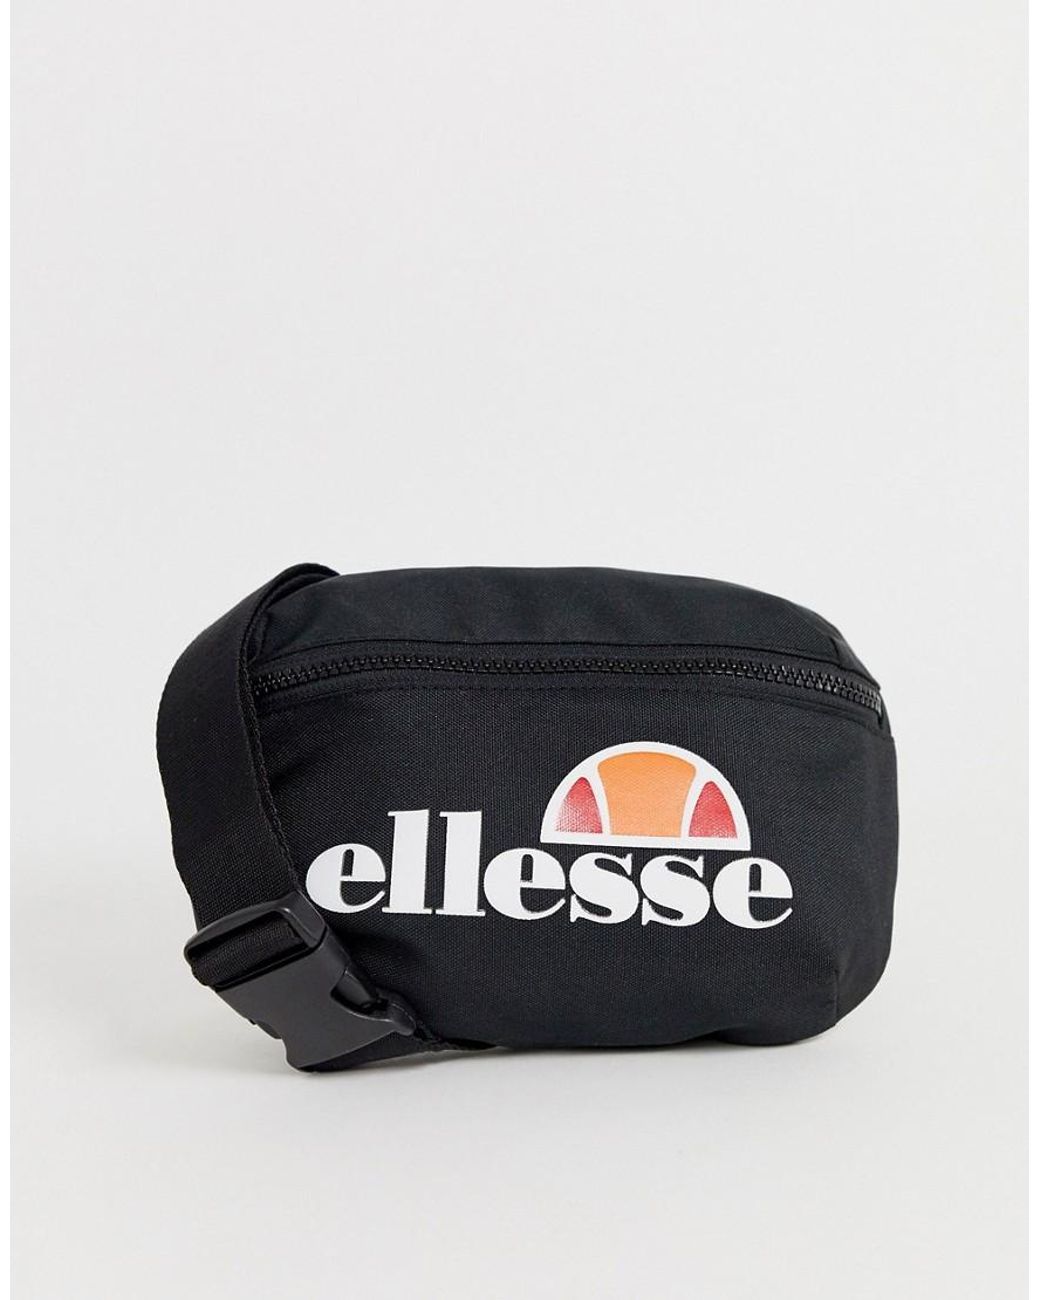 Ellesse Heritage Rosca Cross Body Shoulder Fashion Bum Bag Black 